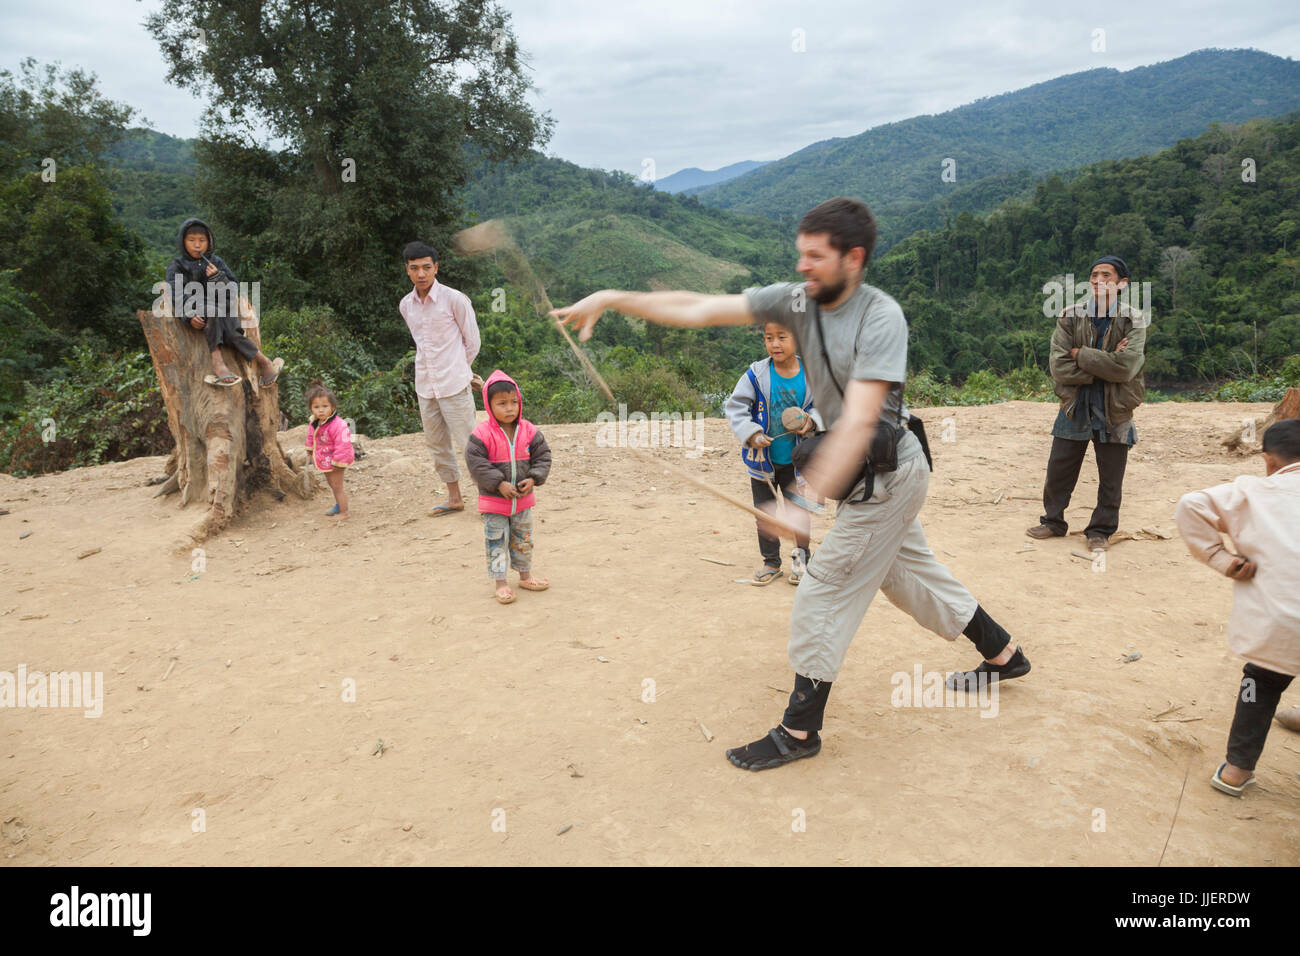 Robert Hahn versucht (erfolglos), einen Holz Kreisel mit Anweisungen von den Kindern am Ban Sop-Kha, Laos zu werfen. Stockfoto